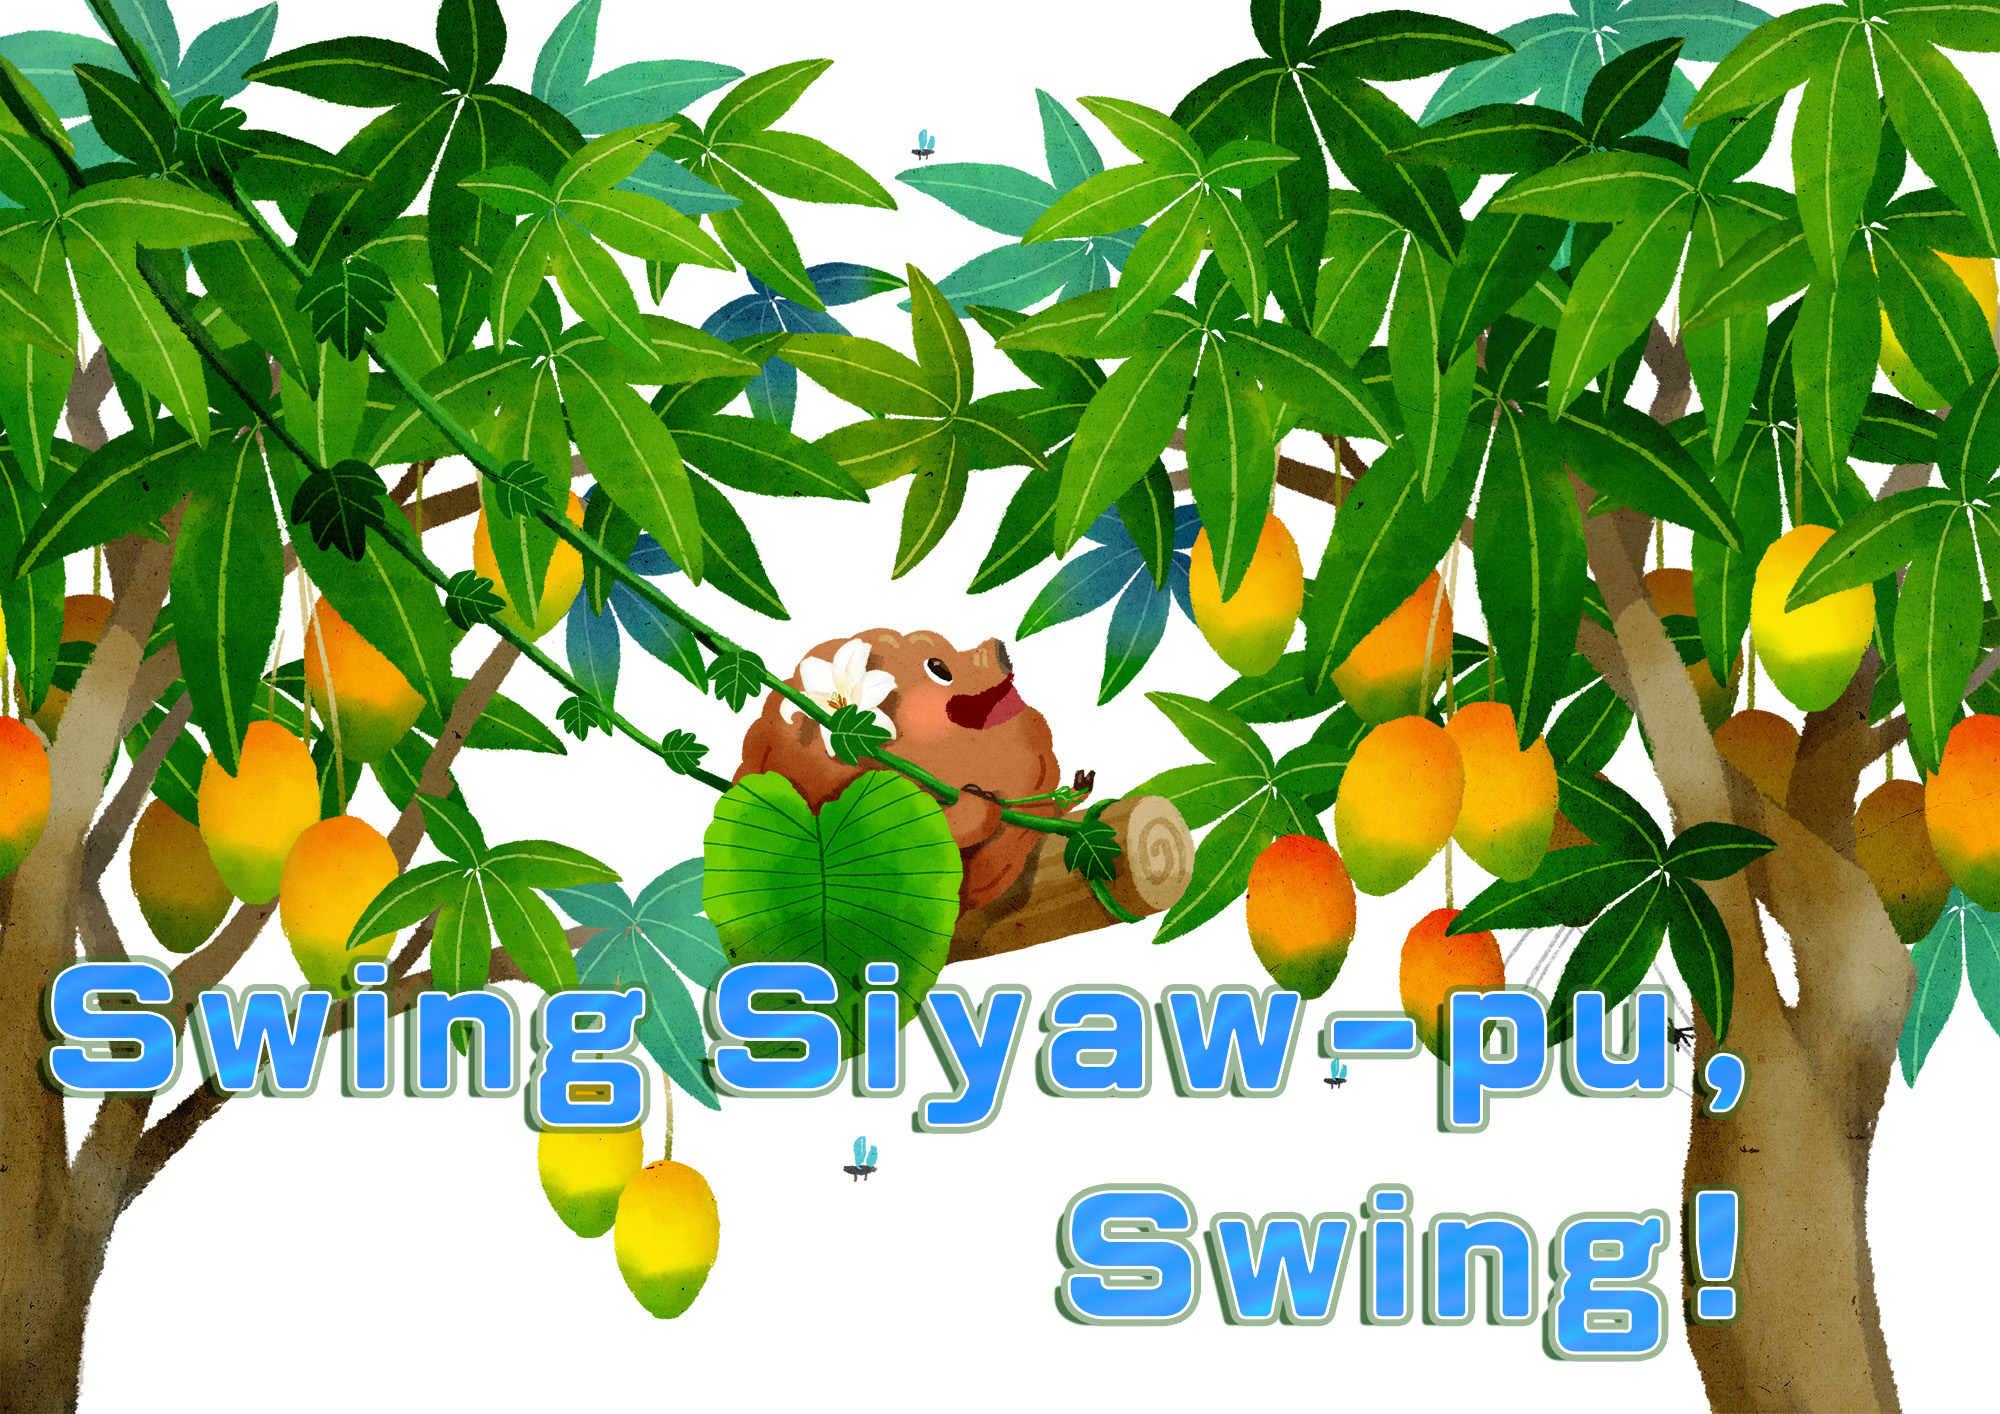 Swing Siyaw-pu, Swing!